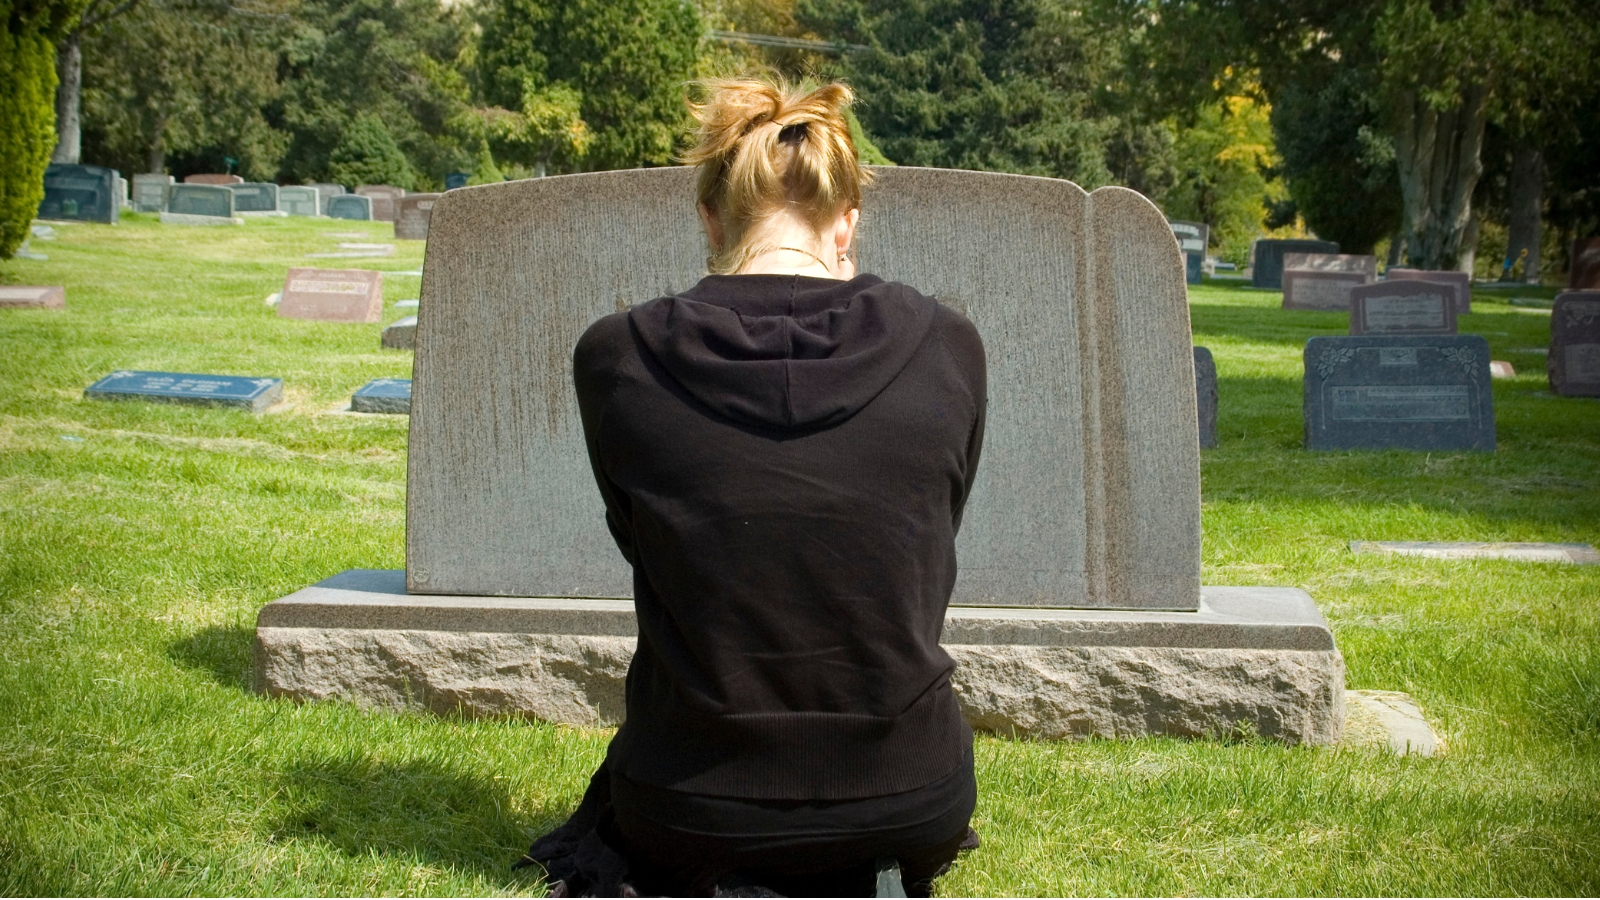 Veliki Broj Amerikanaca izvještava o interakcijama s preminulim rođacima